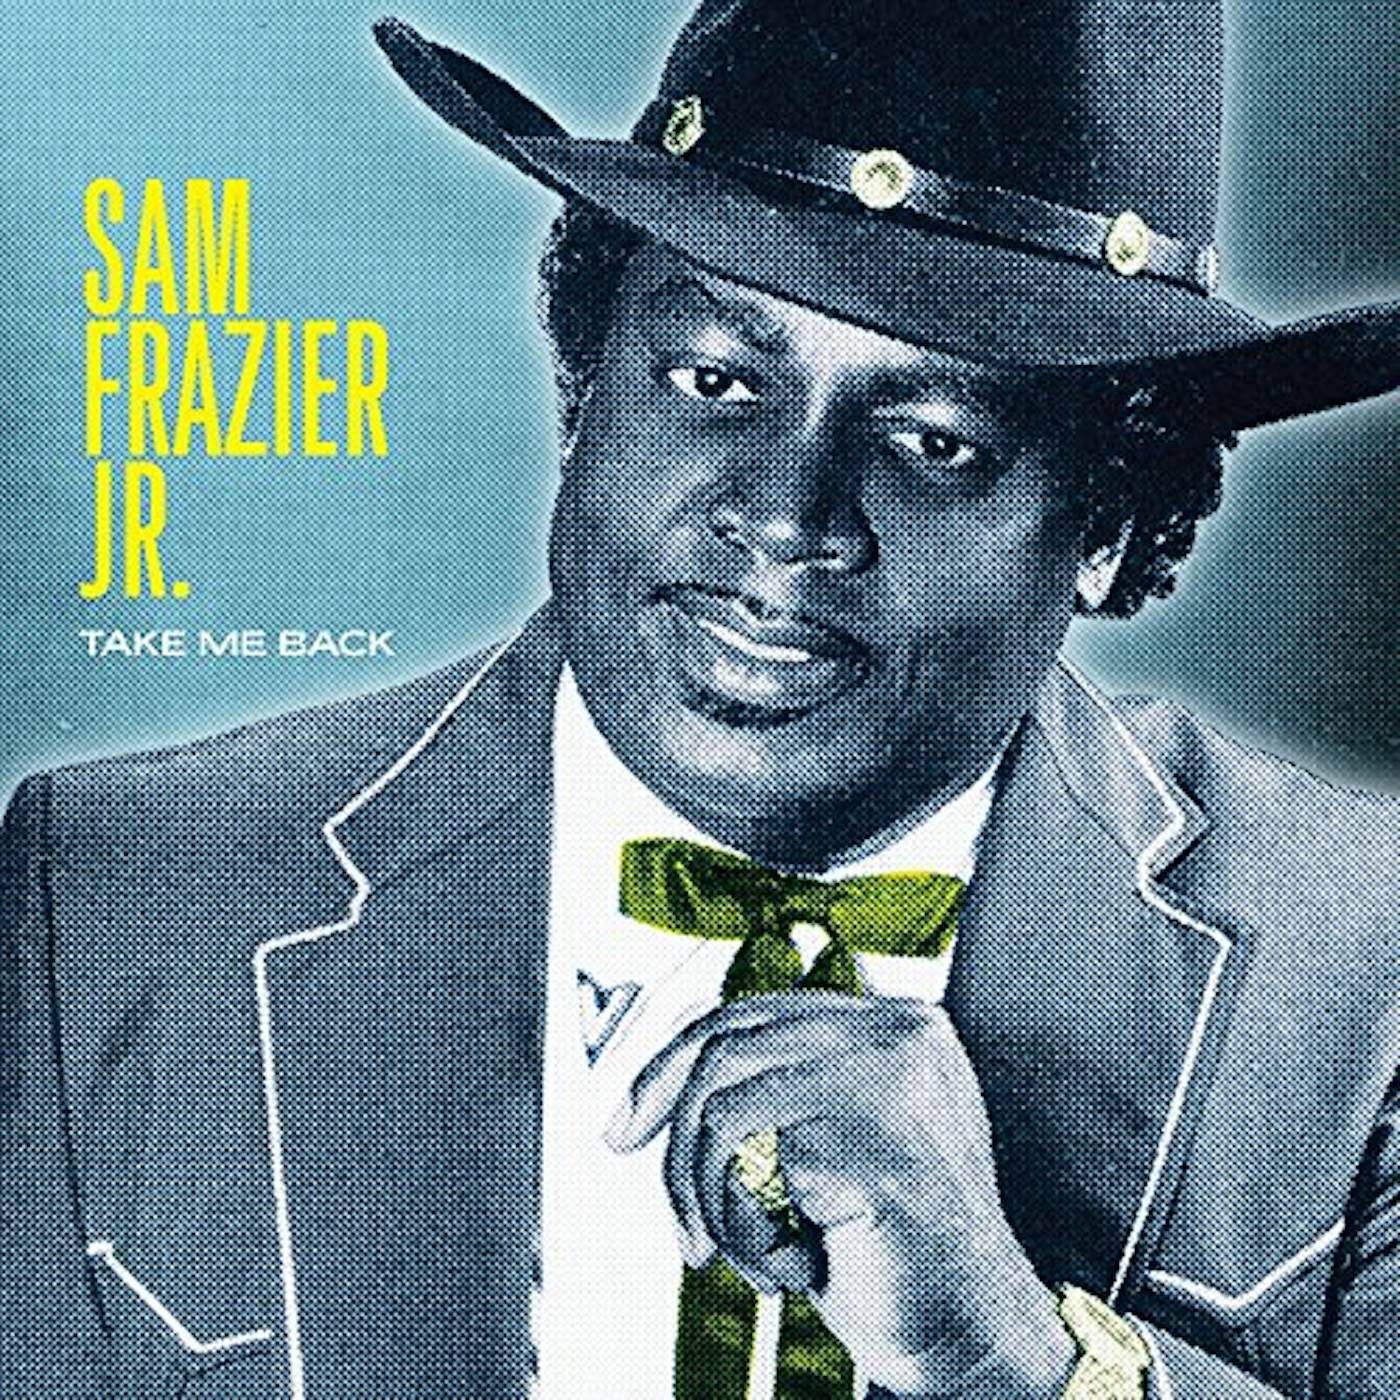 Sam Frazier, Jr. Take Me Back Vinyl Record